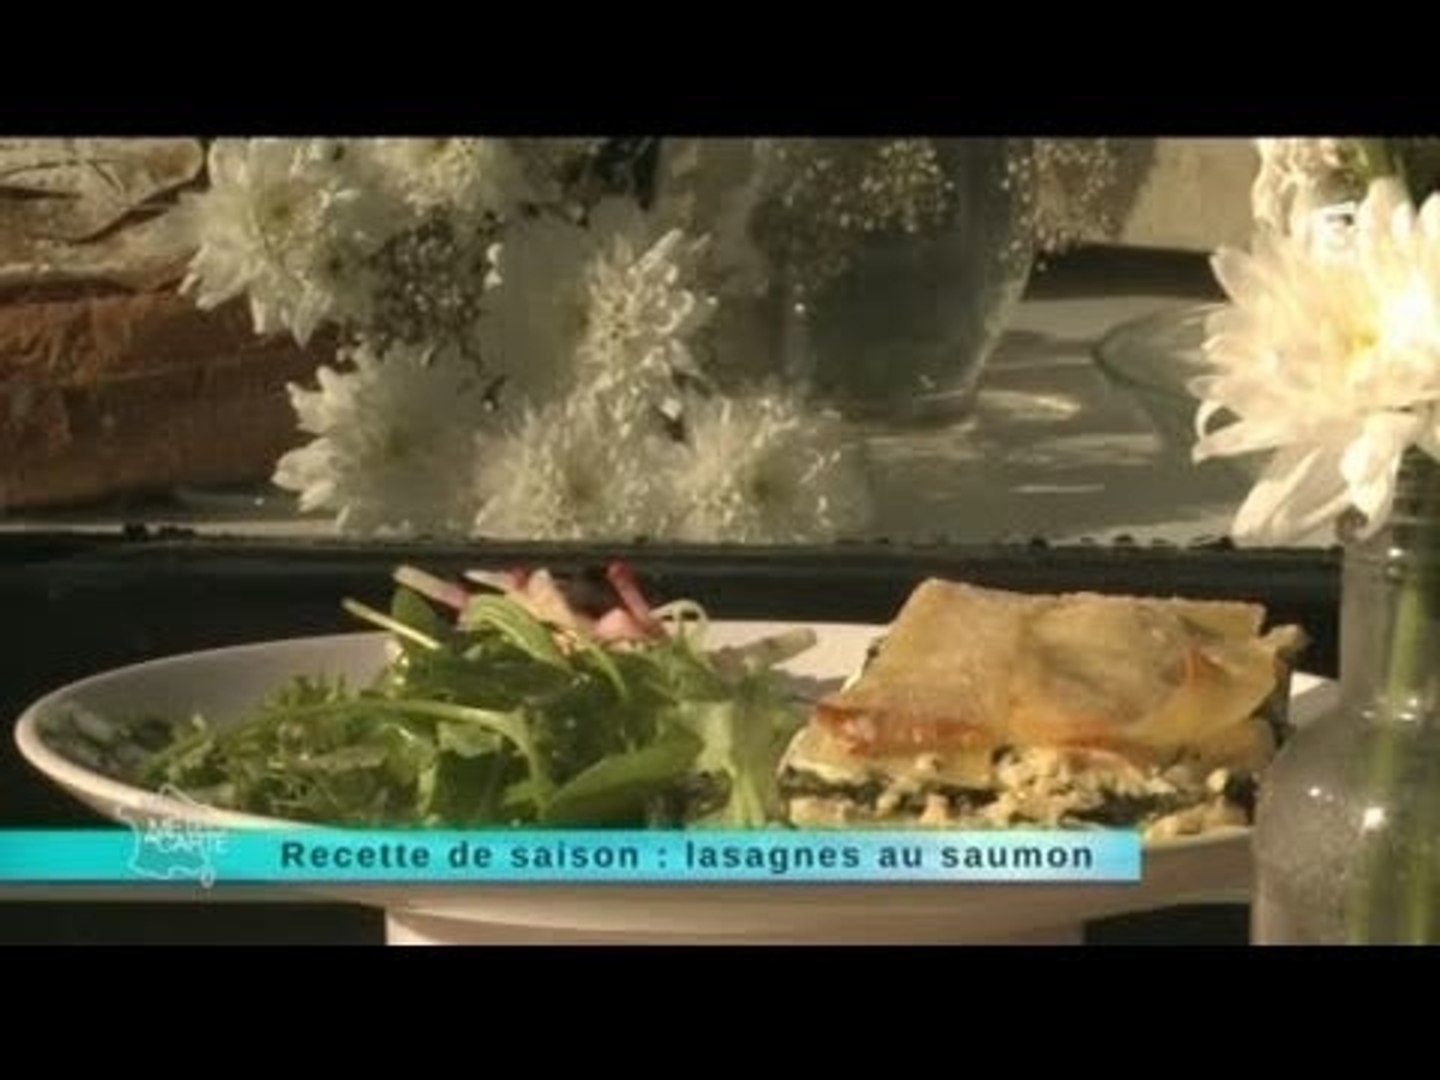 Malc 08 05 14 Recette De Saison Lasagnes Au Saumon Video